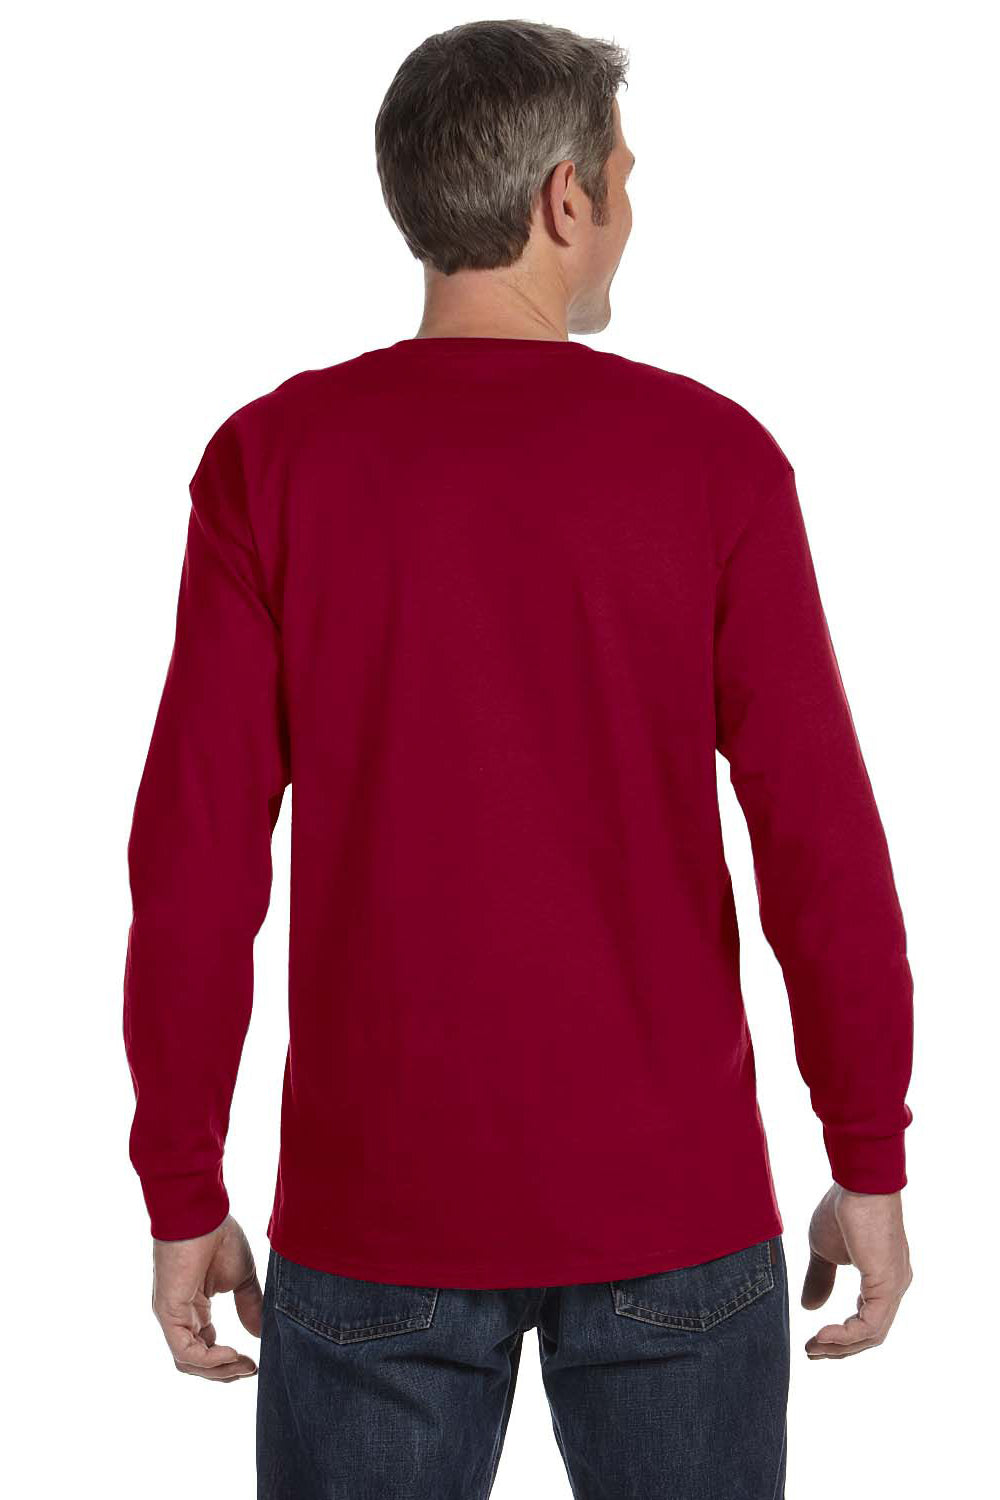 Gildan G540 Mens Long Sleeve Crewneck T-Shirt Cardinal Red Back